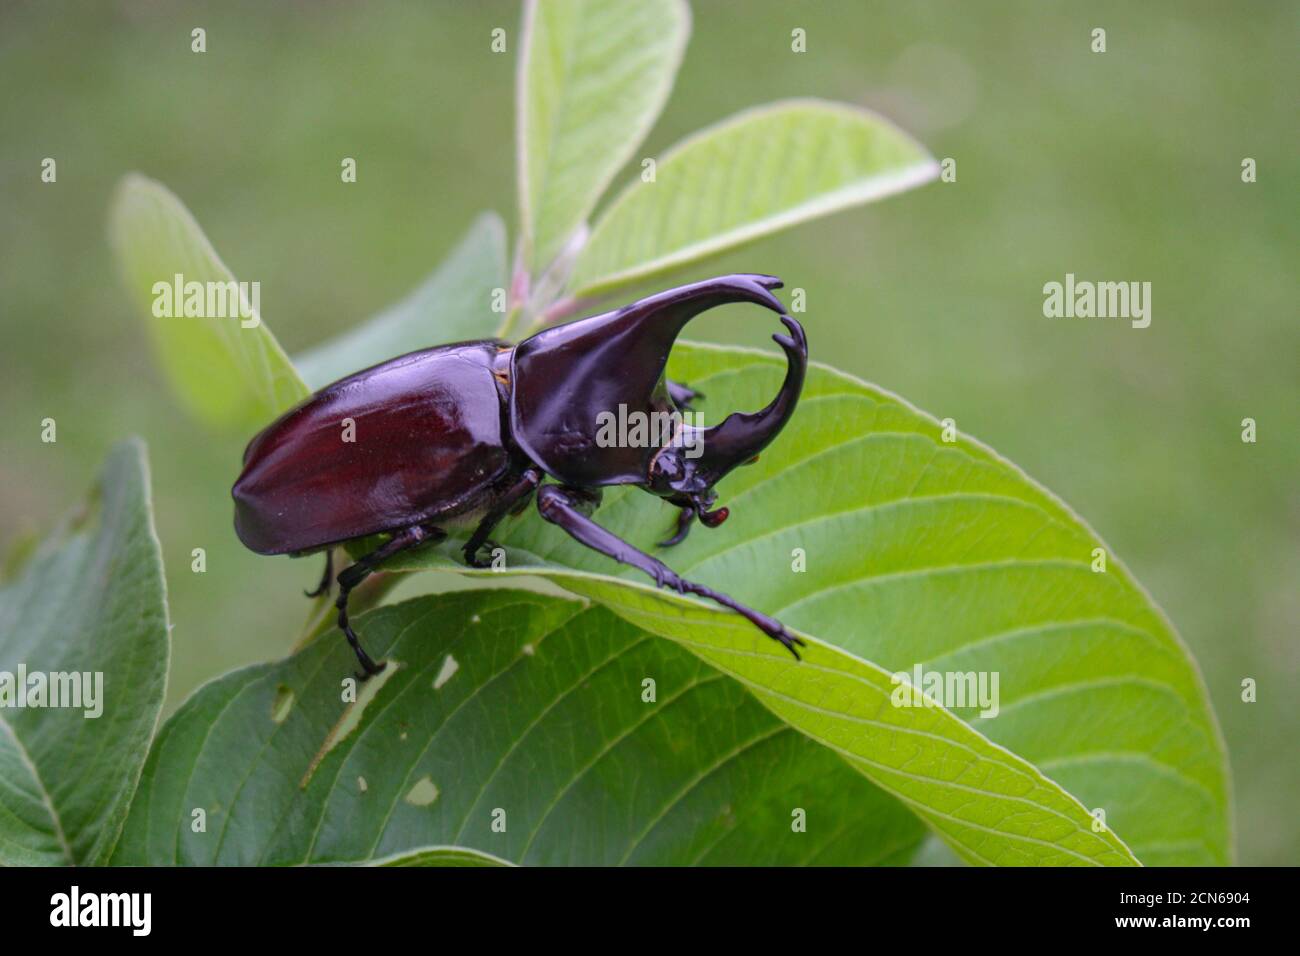 Corno beetlel, Rhino beetlel, corno beetlel sulla foglia in natura Foto Stock